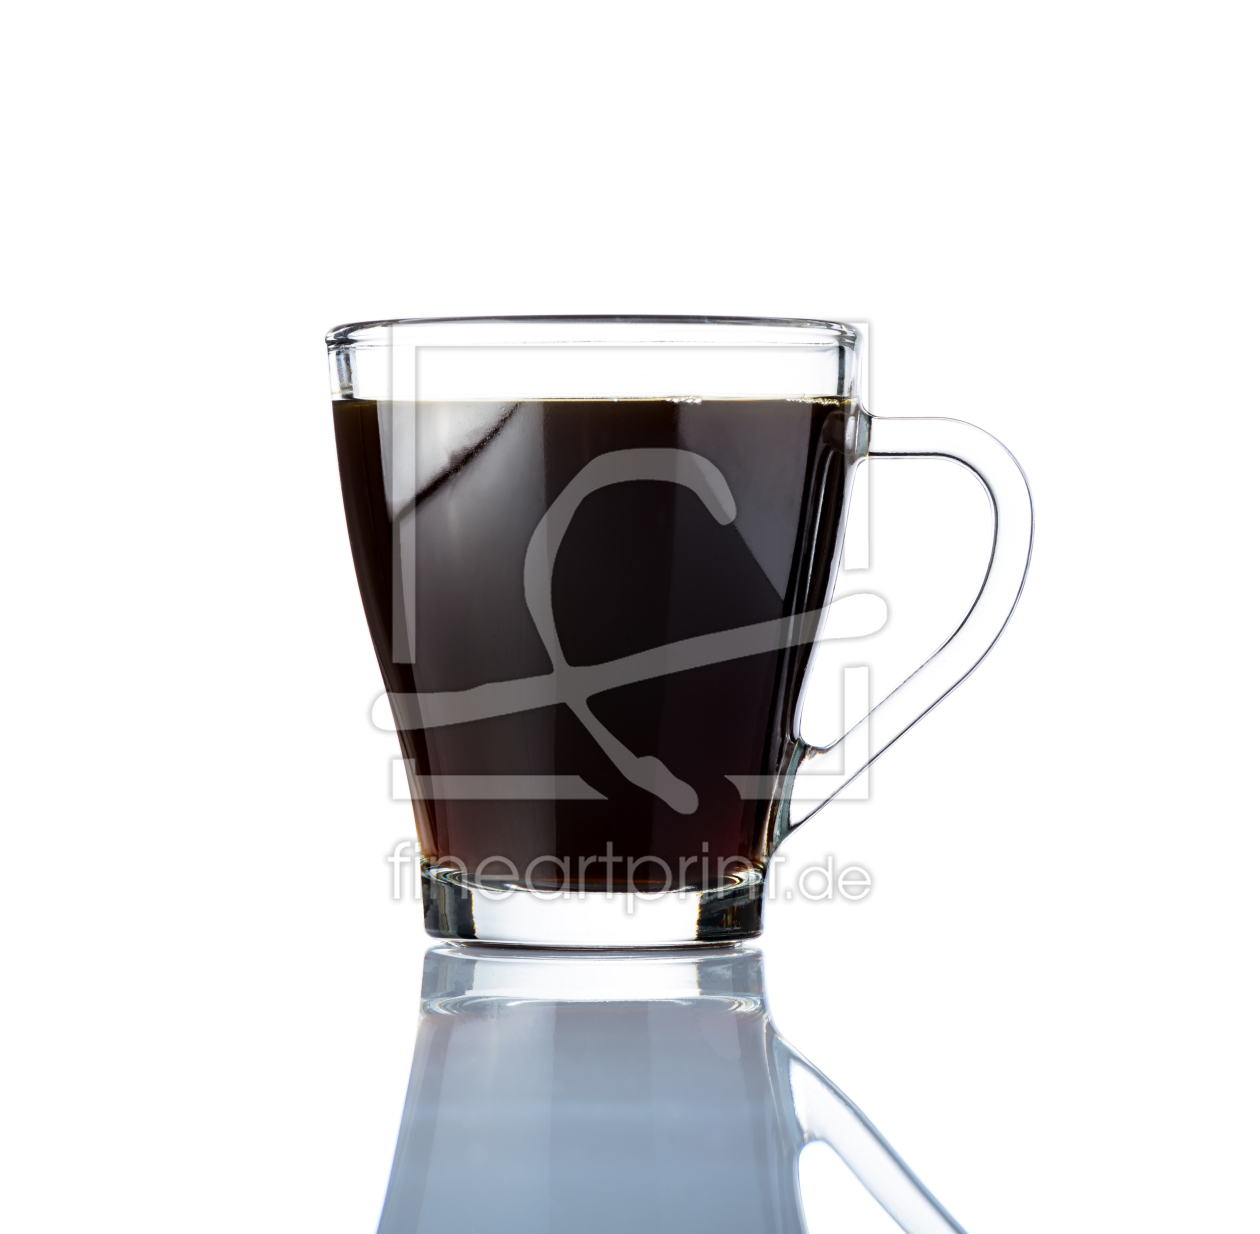 Bild-Nr.: 11857177 Kaffeetasse auf Weißem Hintergrund erstellt von xfotostudio